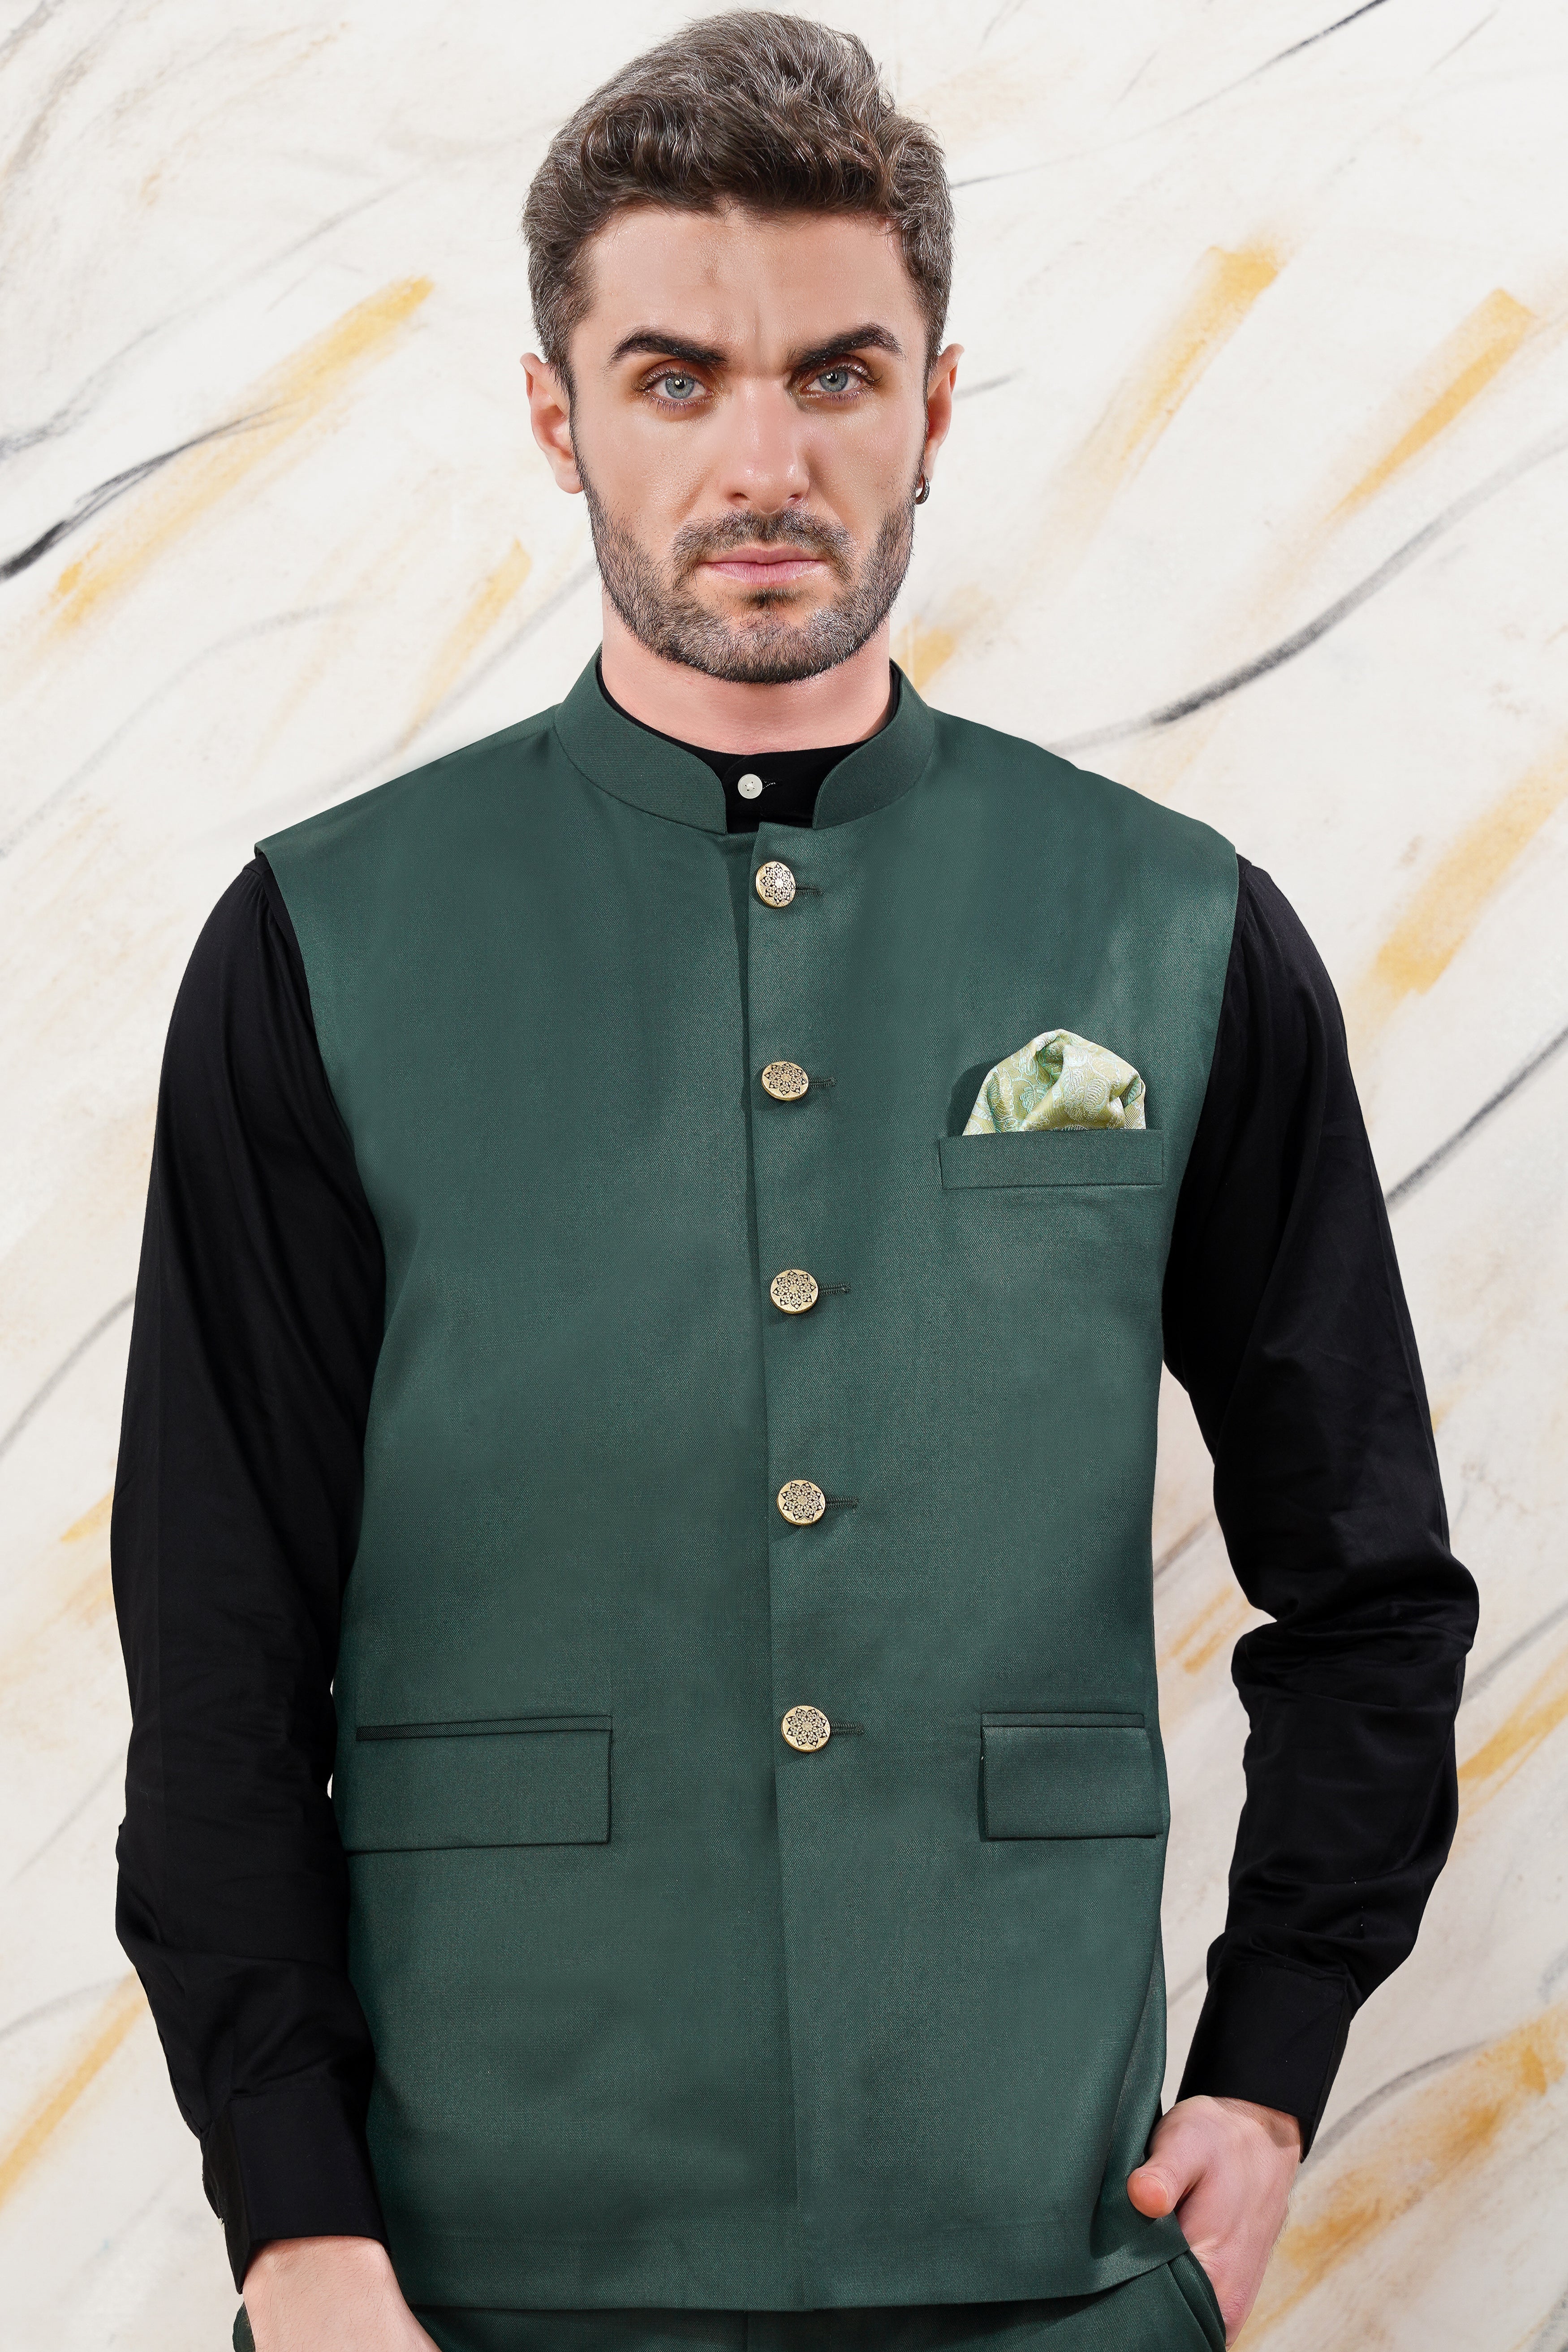 Treemoda Dark Green Nehru jacket For Men Stylish Latest Design Suitabl –  Yard of Deals